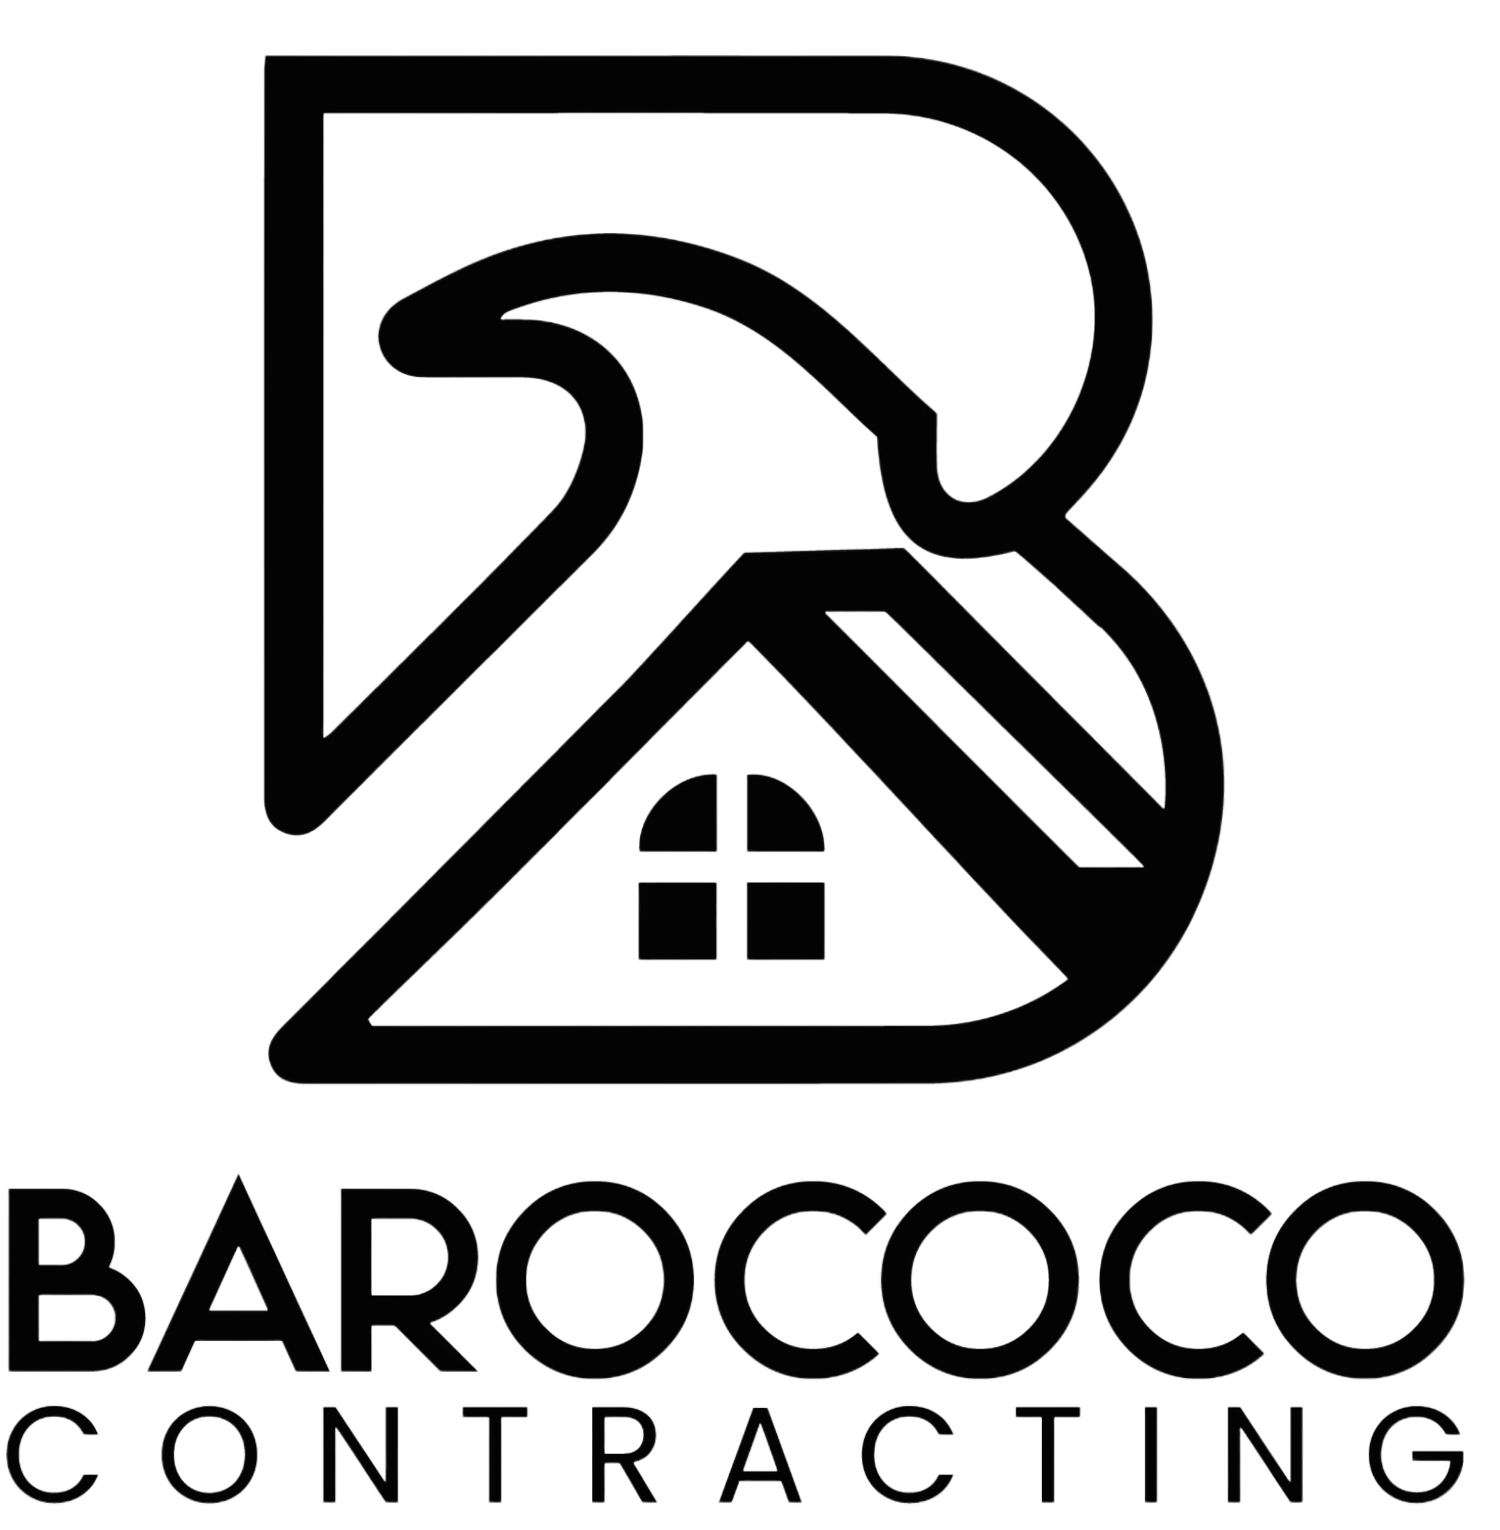 Barococo Contracting